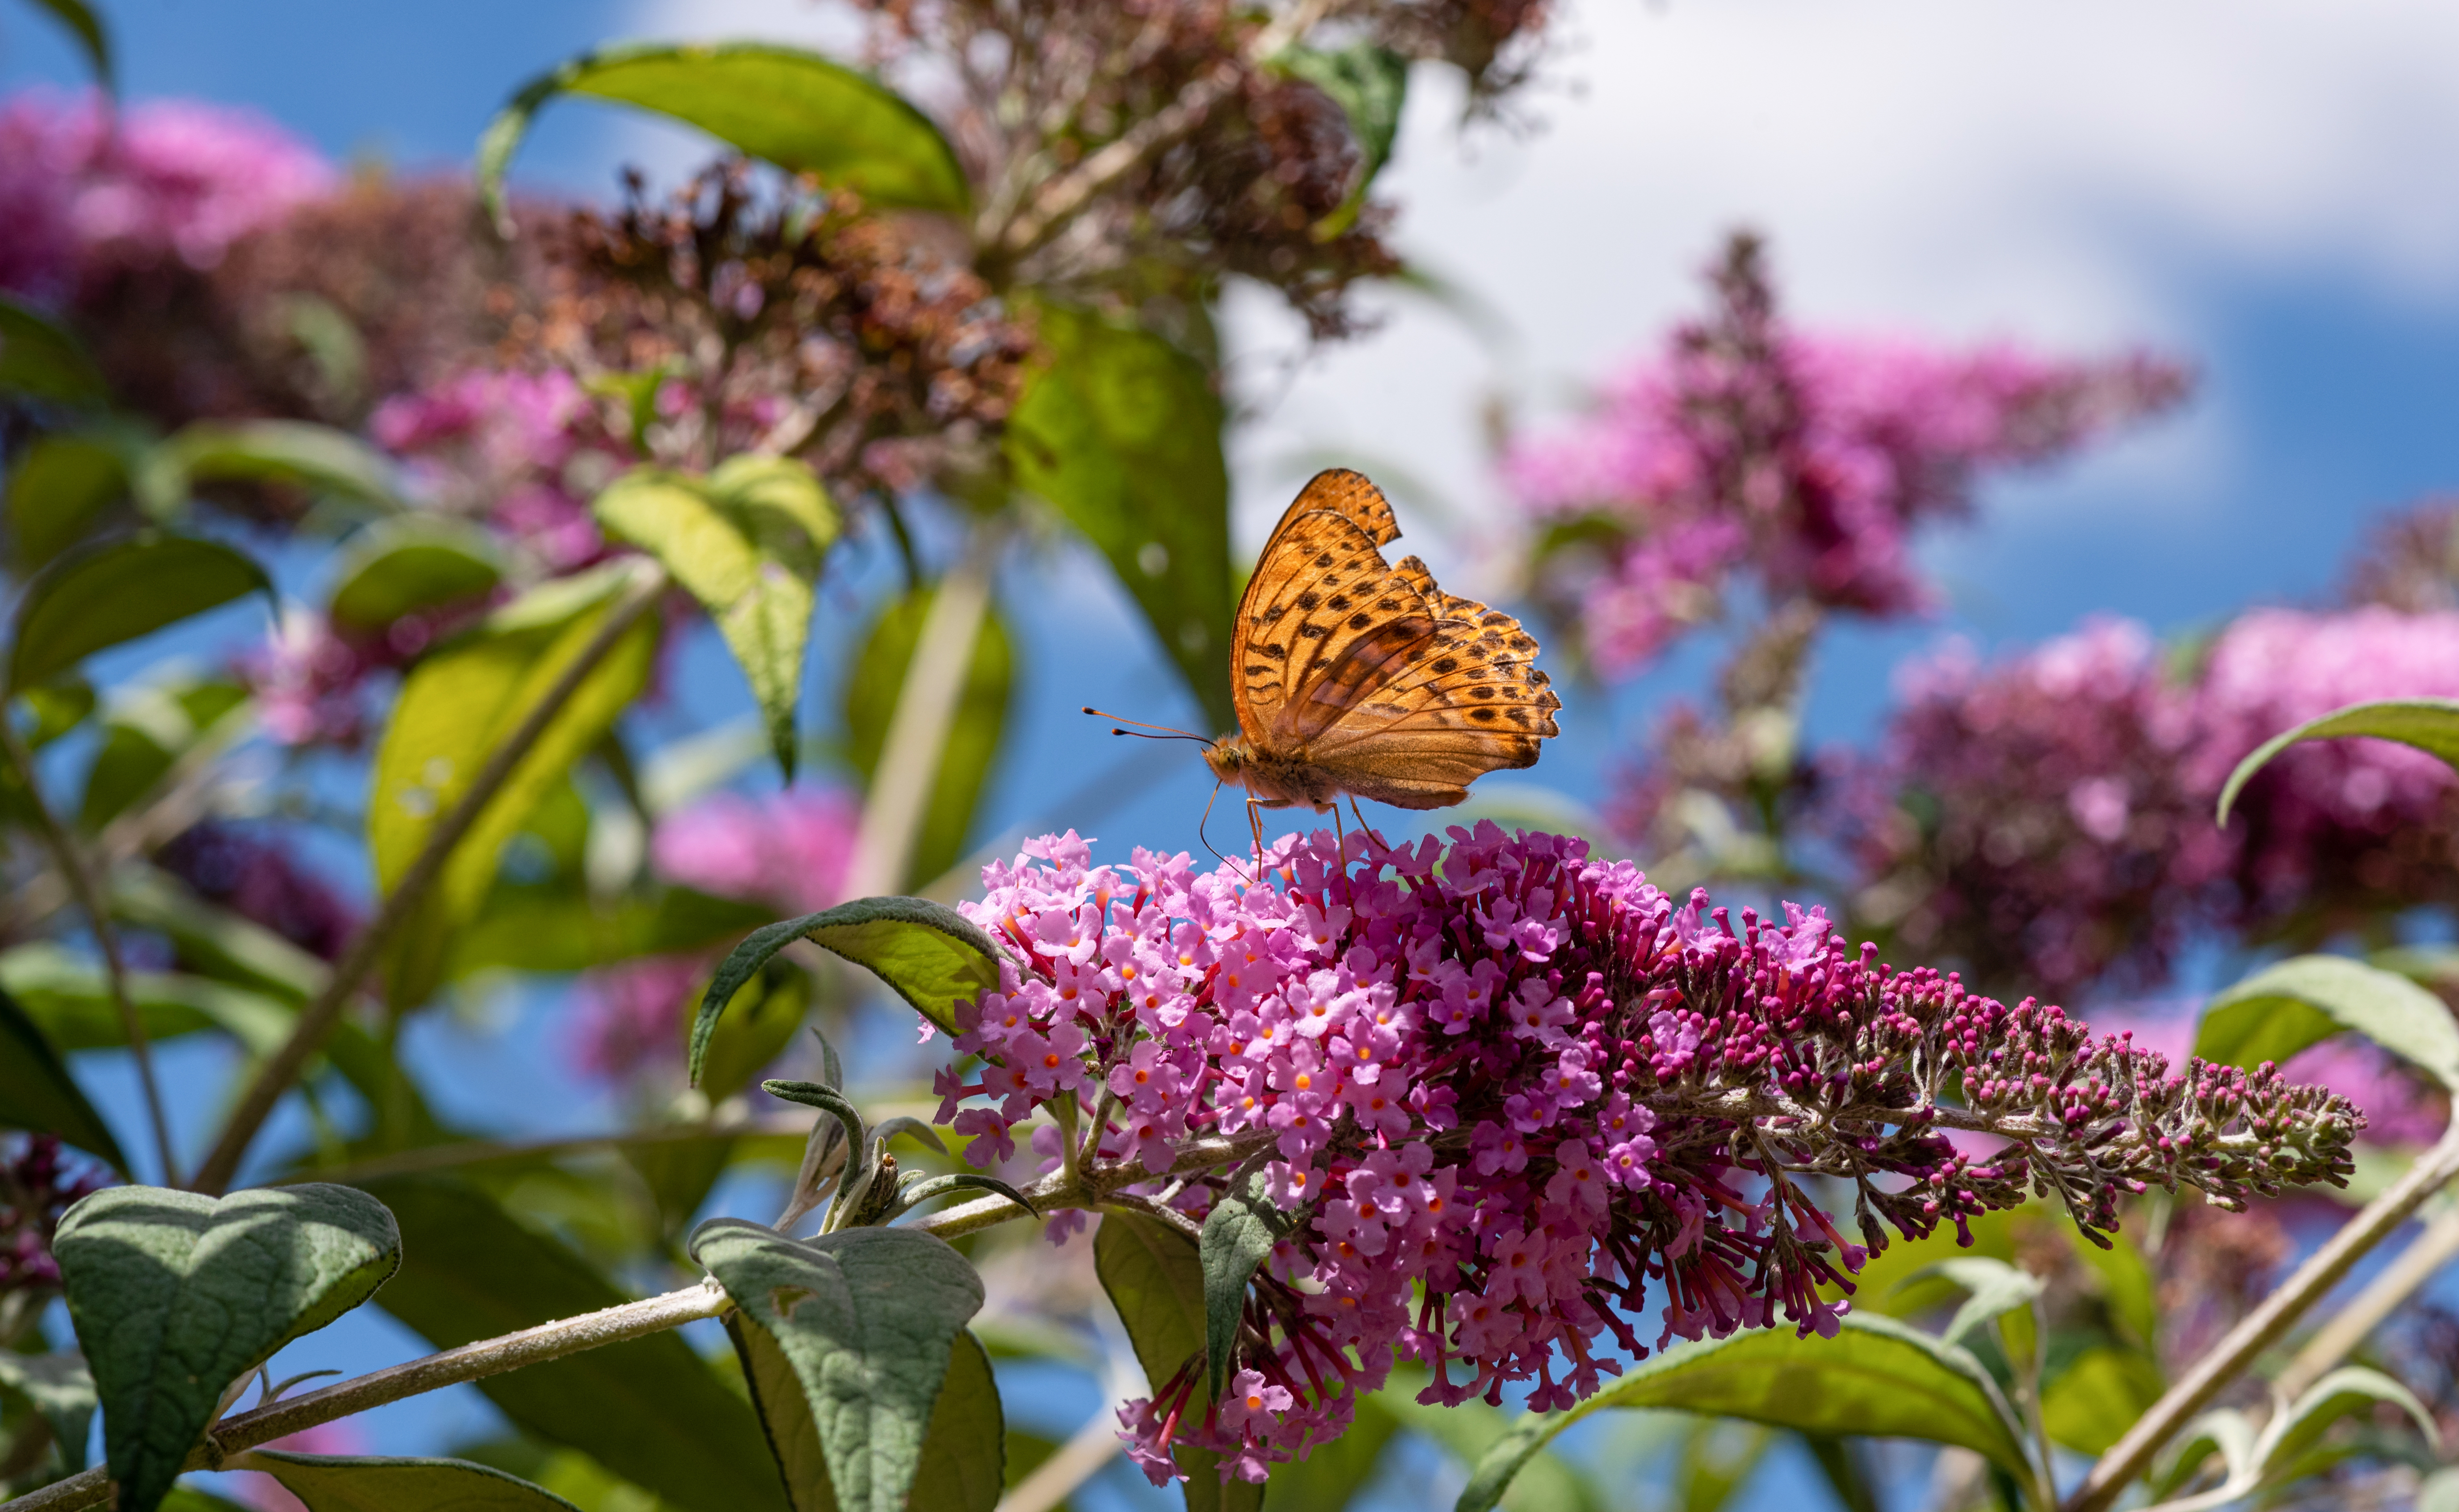 L’arbre à papillon : le paradis des insectes pollinisateurs ! Copyright (c) 2020 Tommy Larey/Shutterstock.